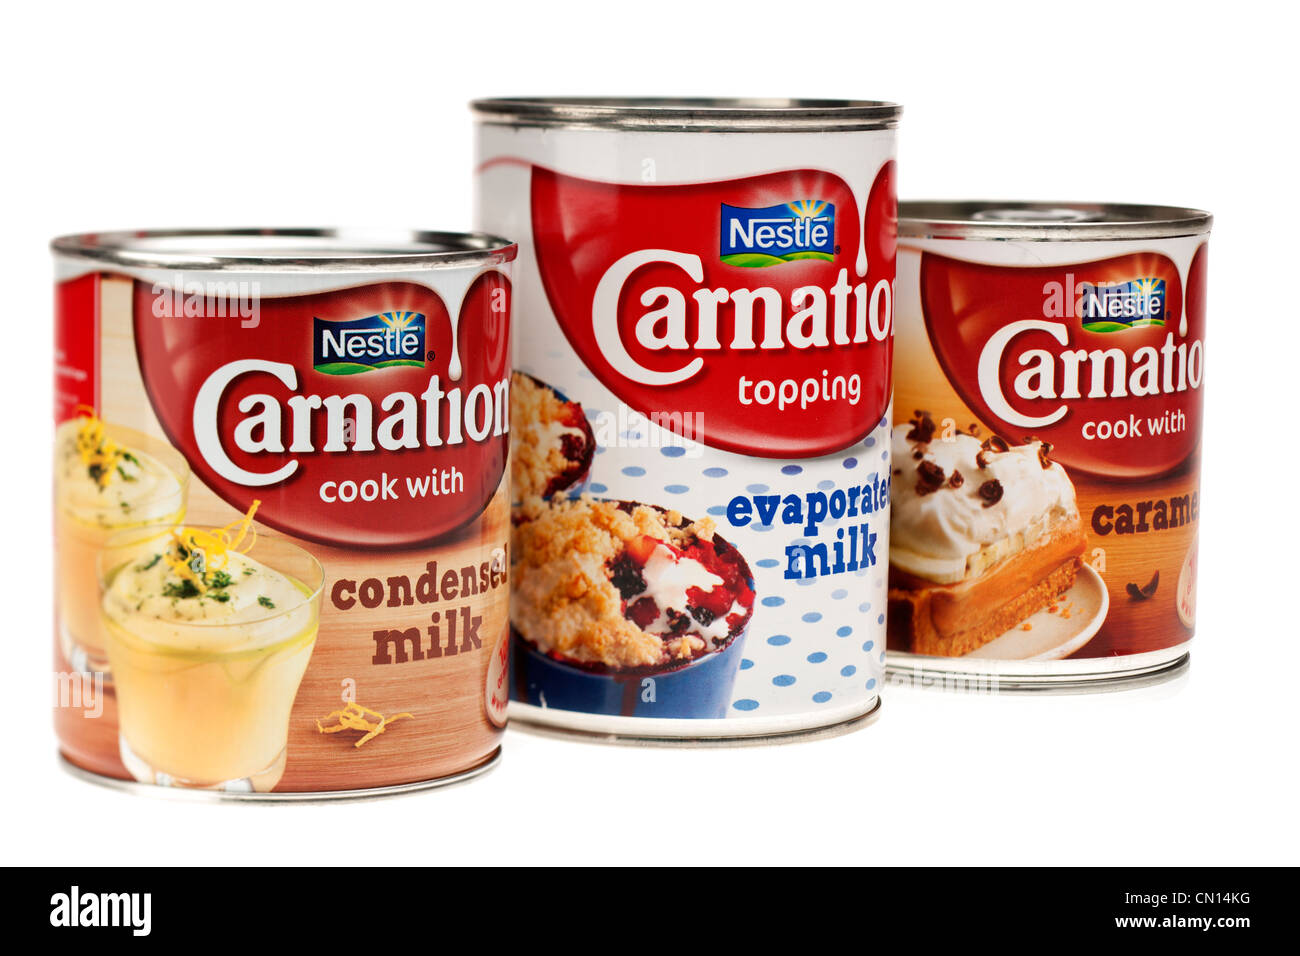 Nestle Carnation products Stock Photo